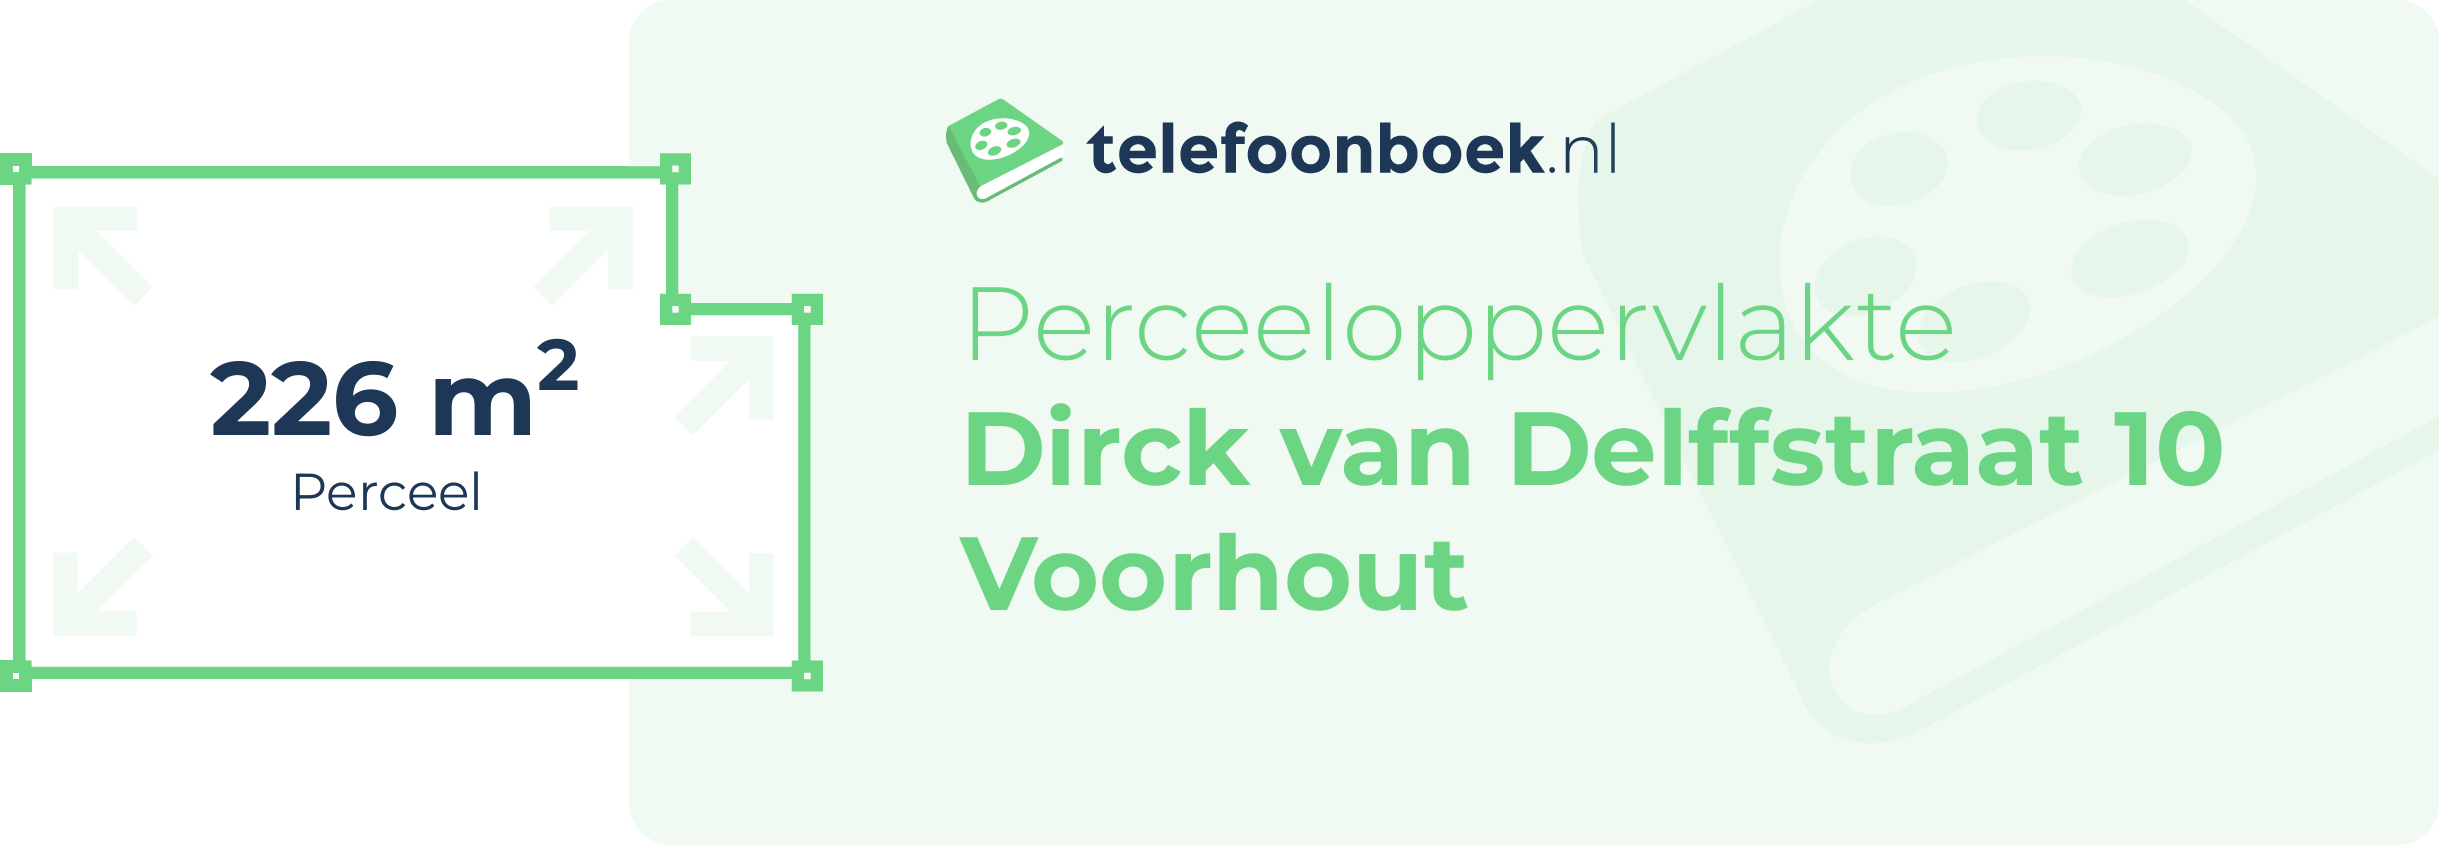 Perceeloppervlakte Dirck Van Delffstraat 10 Voorhout